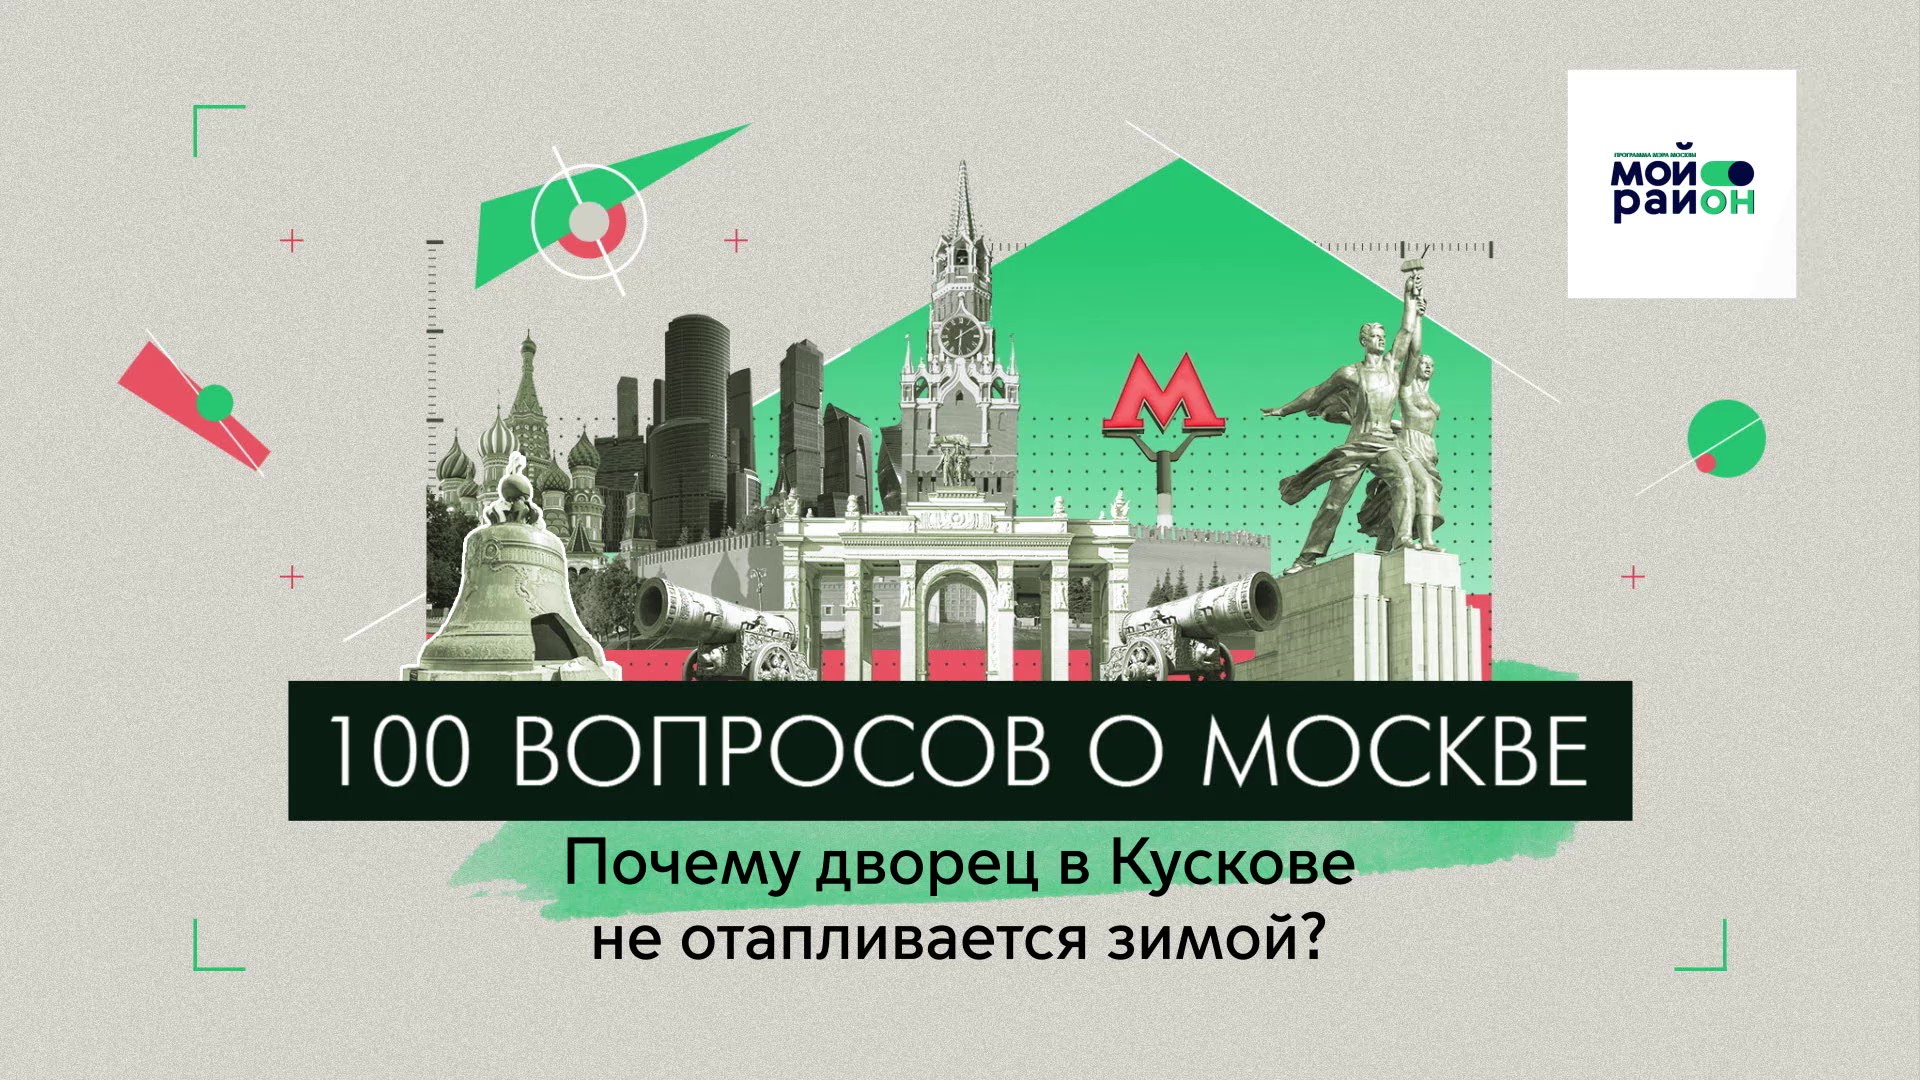 100 вопросов о Москве: Почему дворец в Кускове не отапливается зимой?